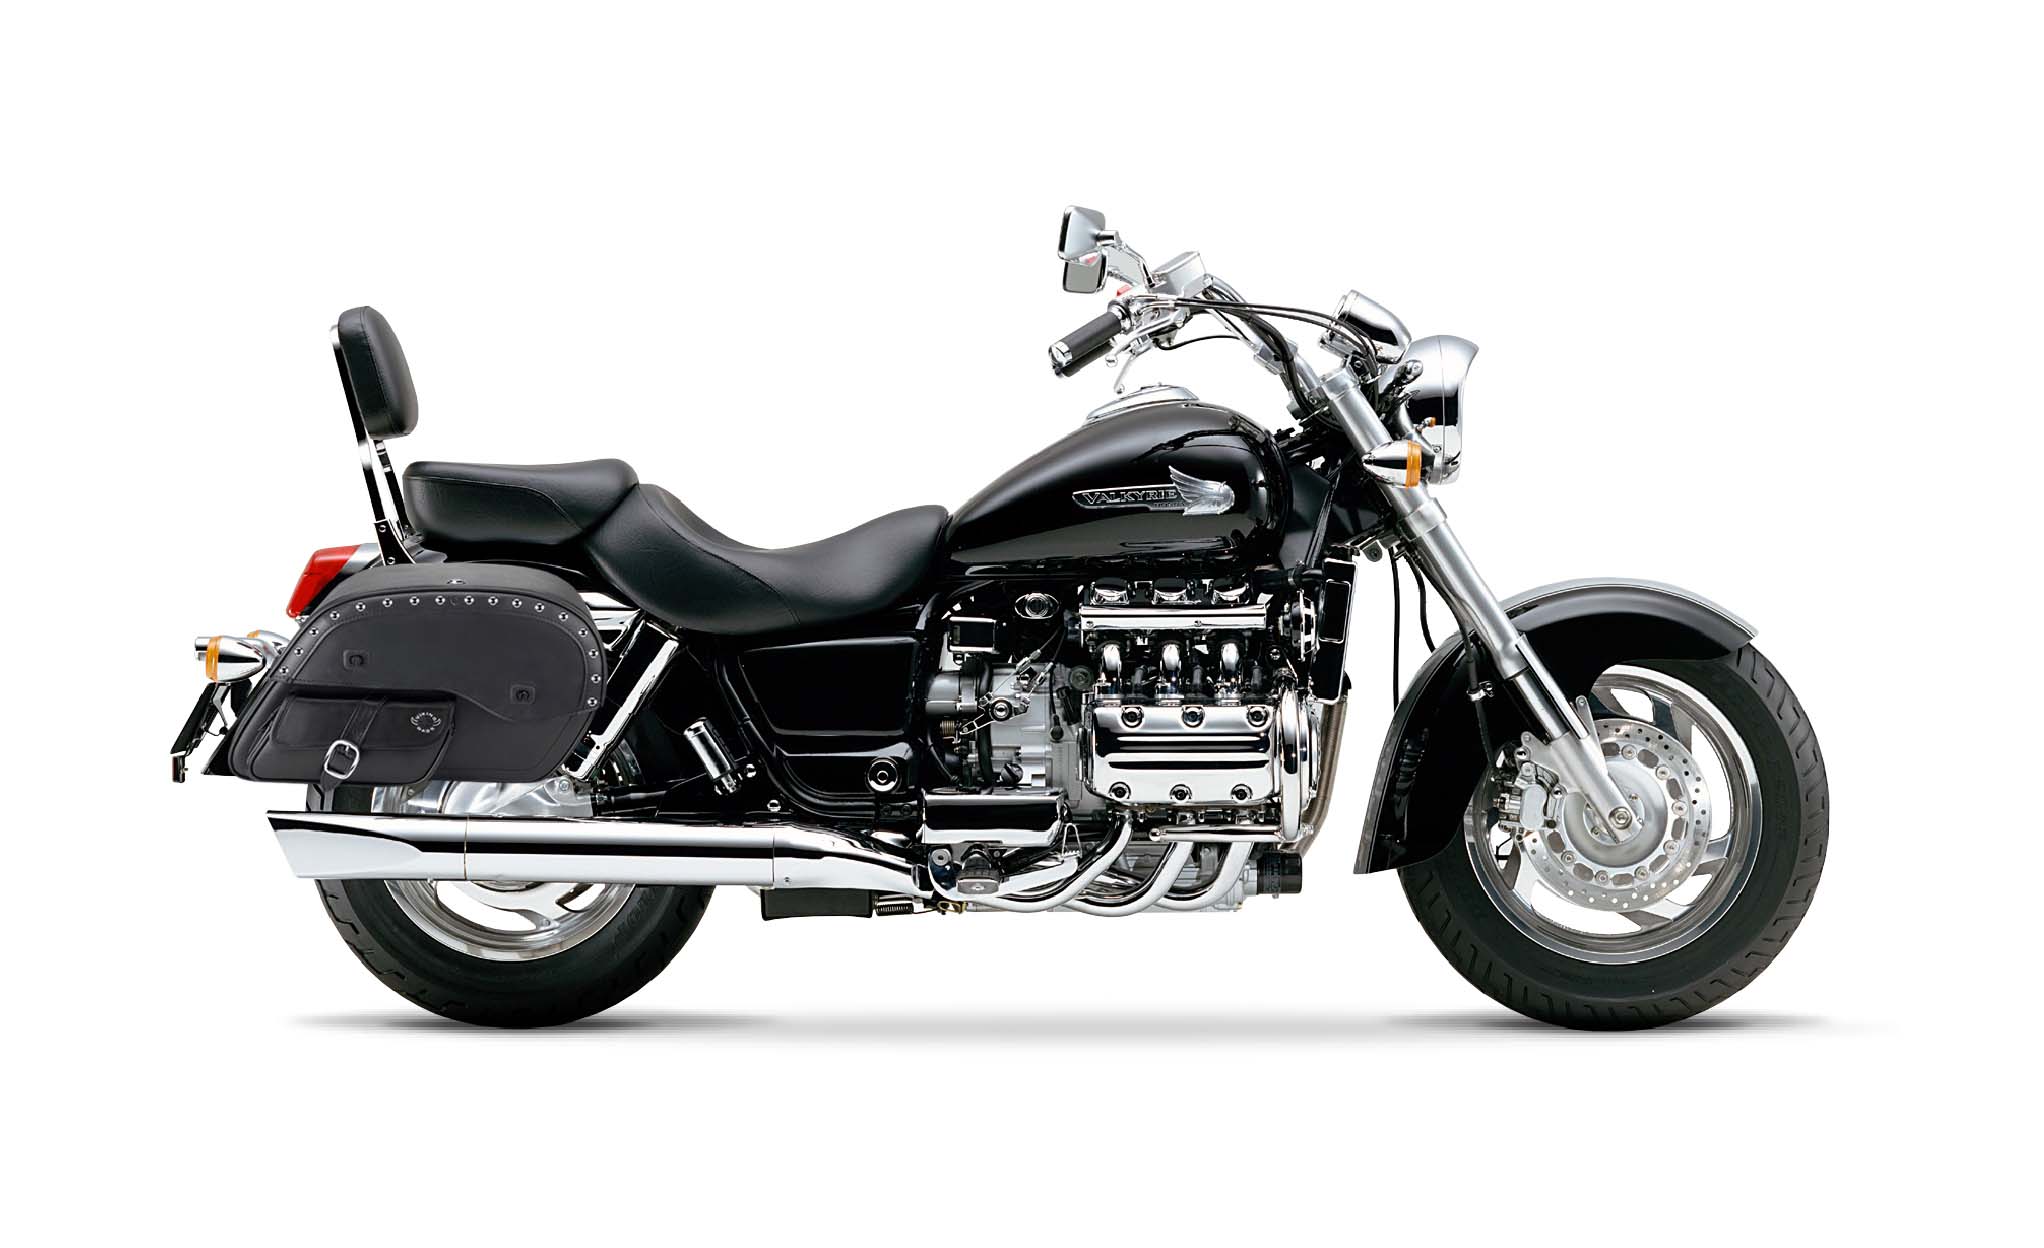 Viking Side Pocket Large Studded Honda Valkyrie 1500 Standard Leather Motorcycle Saddlebags on Bike Photo @expand